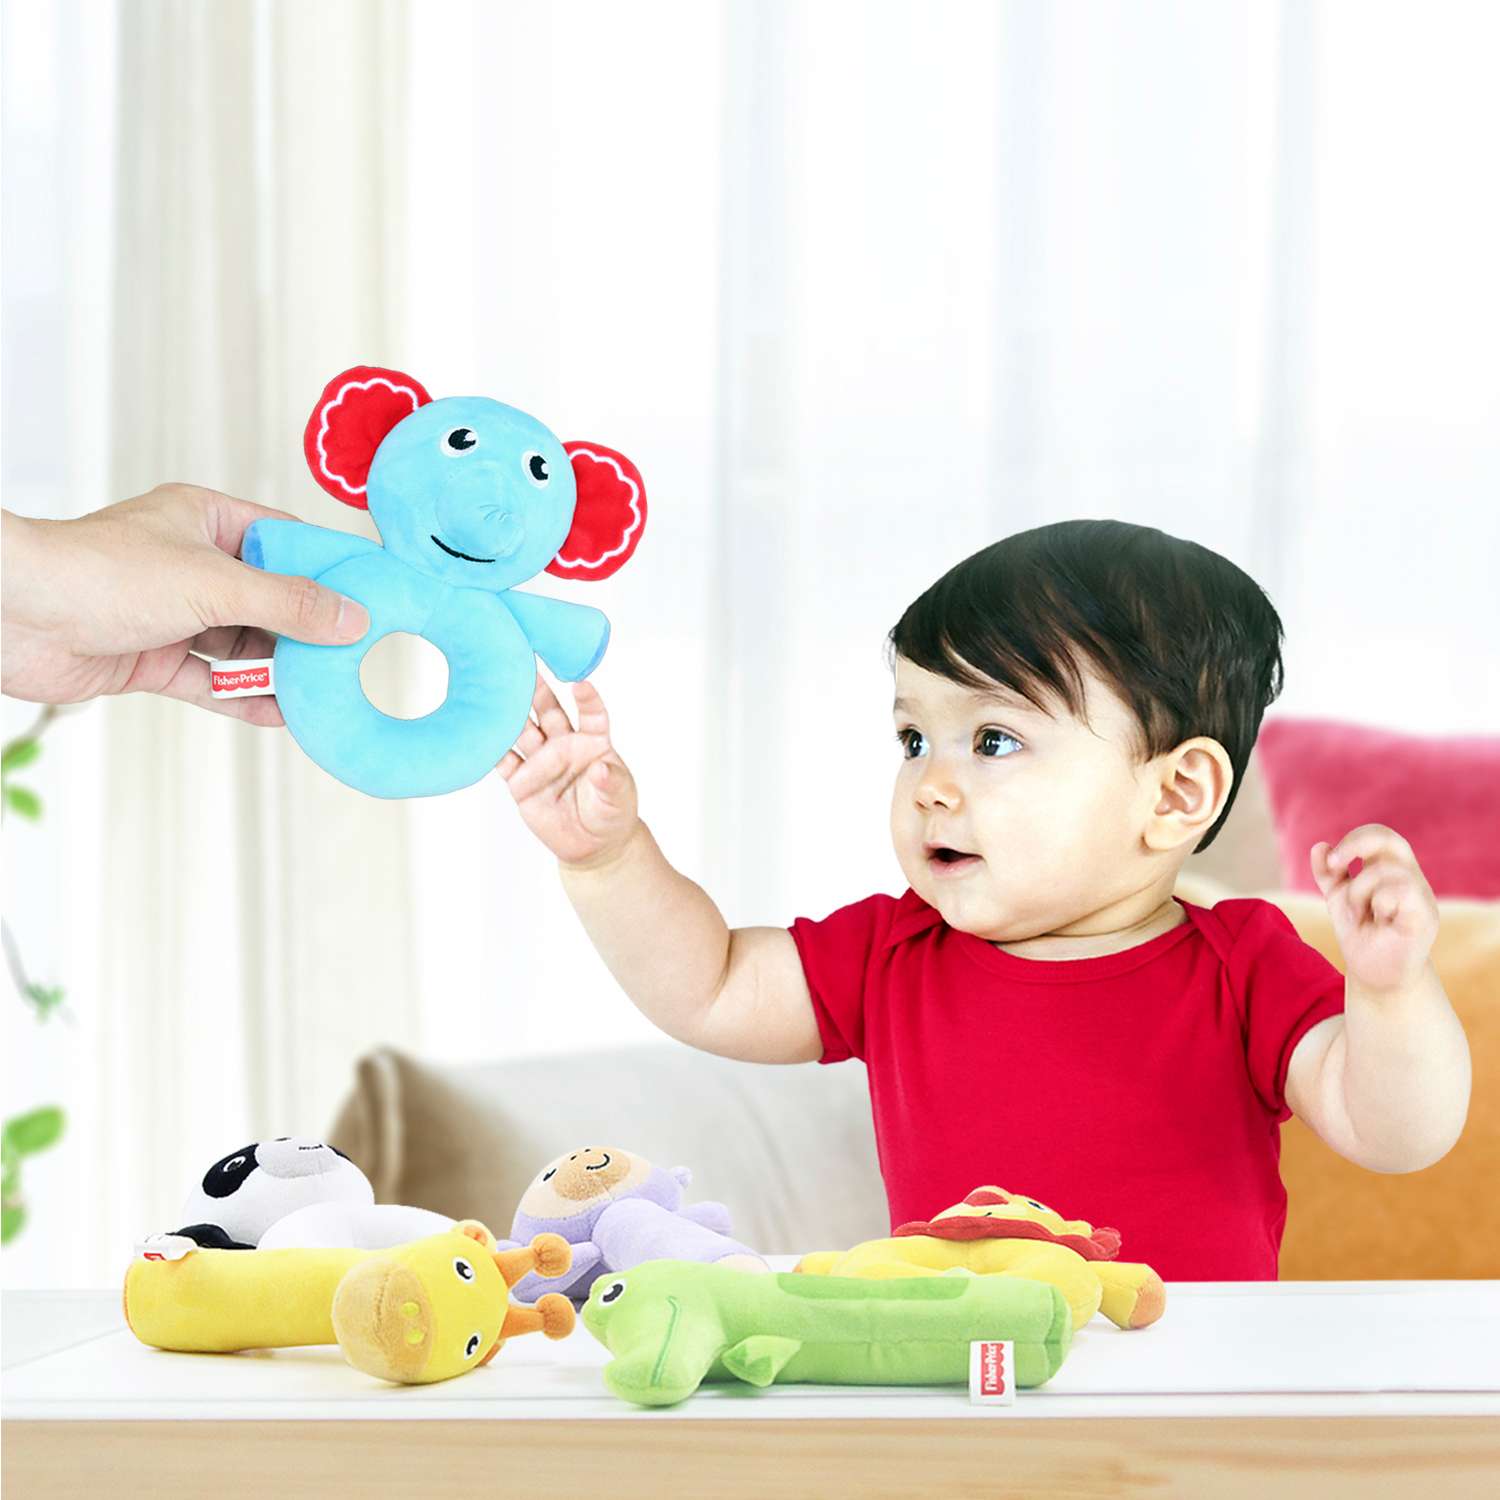 Погремушка-колечко Fisher Price Слоненок развивающая мягкая игрушка для детей 0+ - фото 3